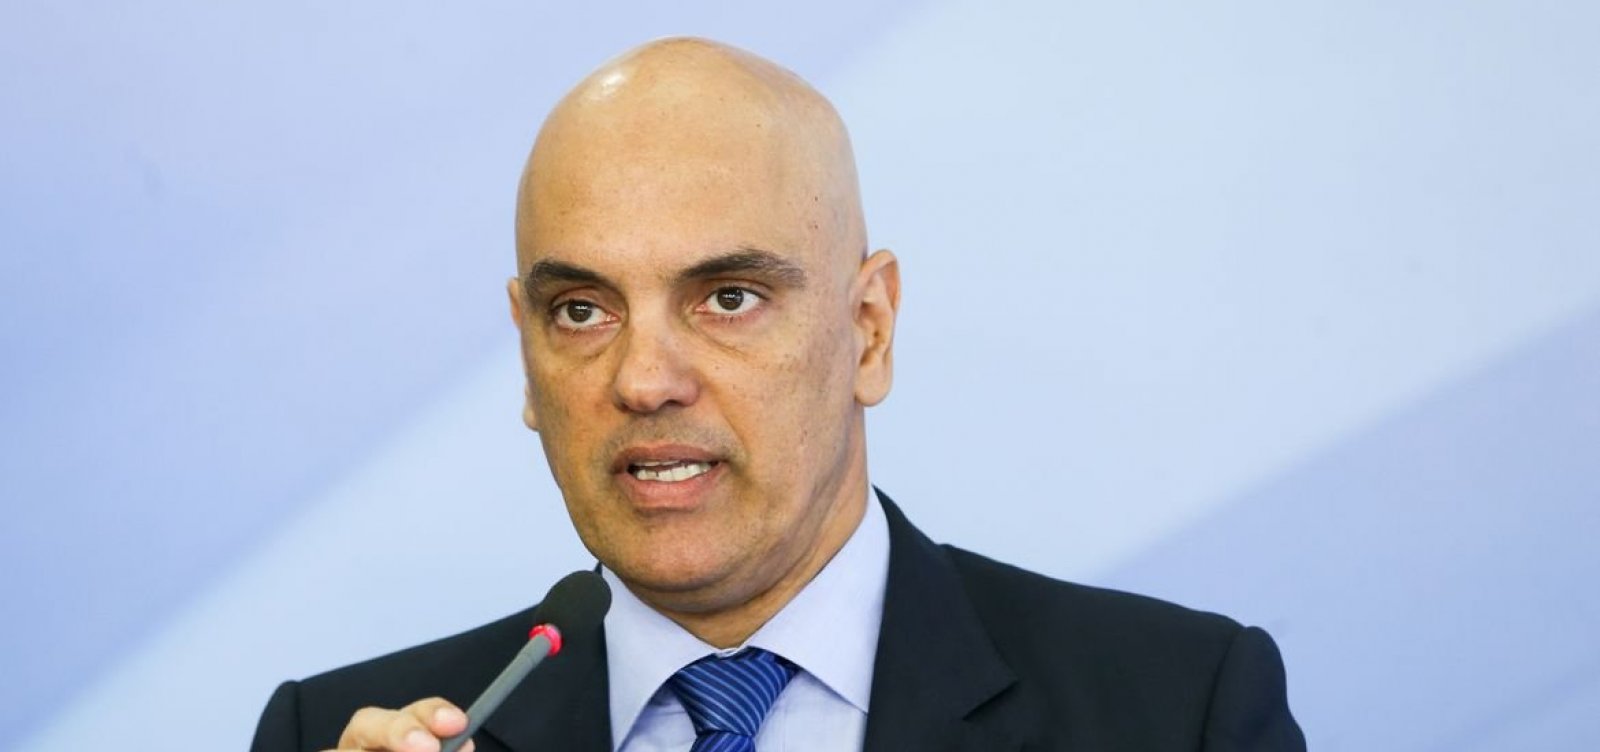 Alexandre de Moraes é sorteado relator do processo de candidatura de Bolsonaro no TSE